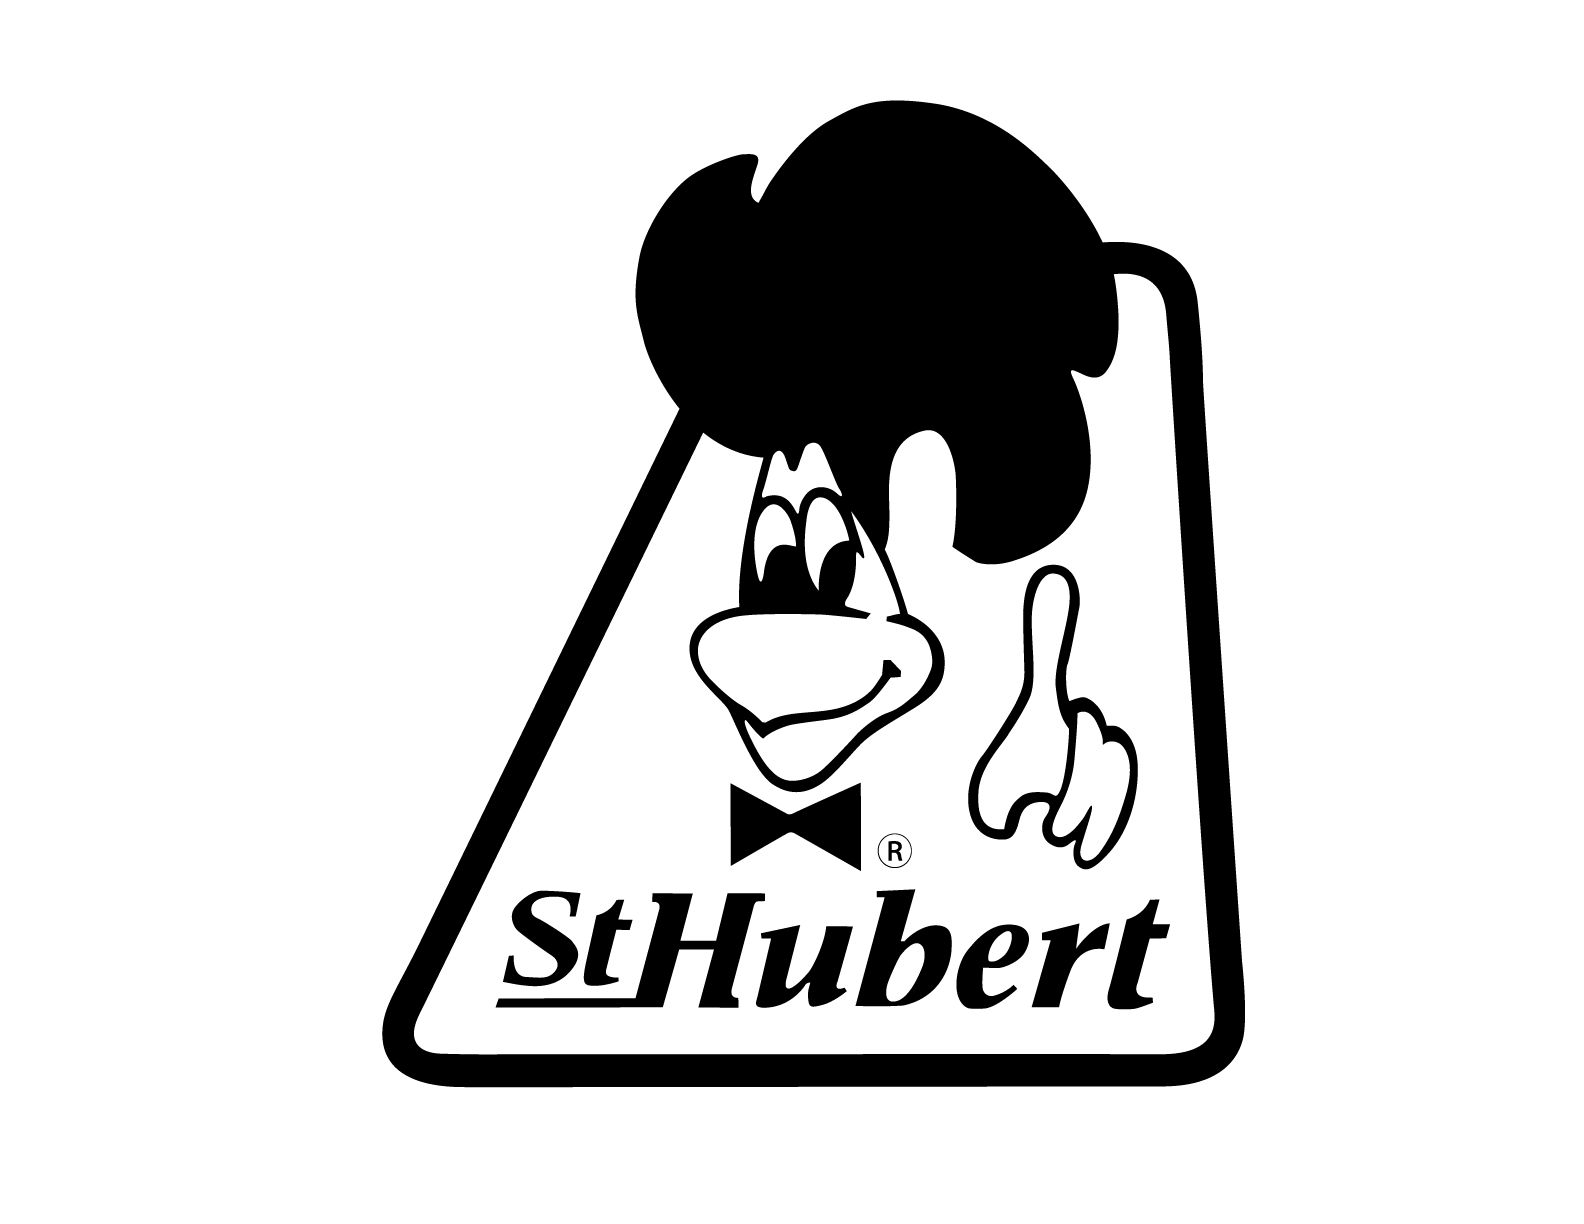 St-Hubert Logo